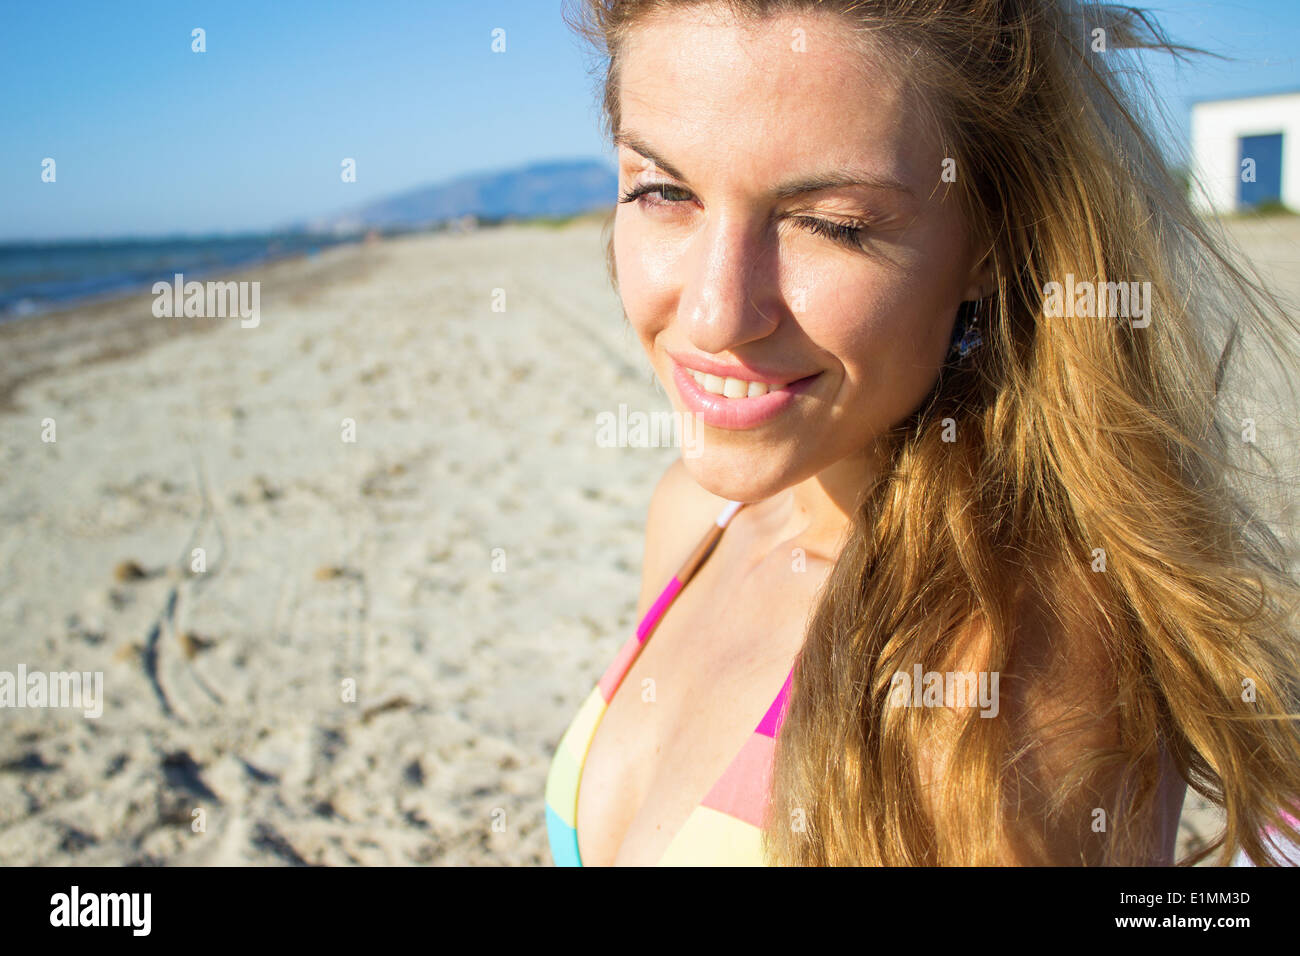 young woman face wink bikini portrait beach sea 'looking at camera' closeup beautiful blond hair blonde 'long hair' Stock Photo